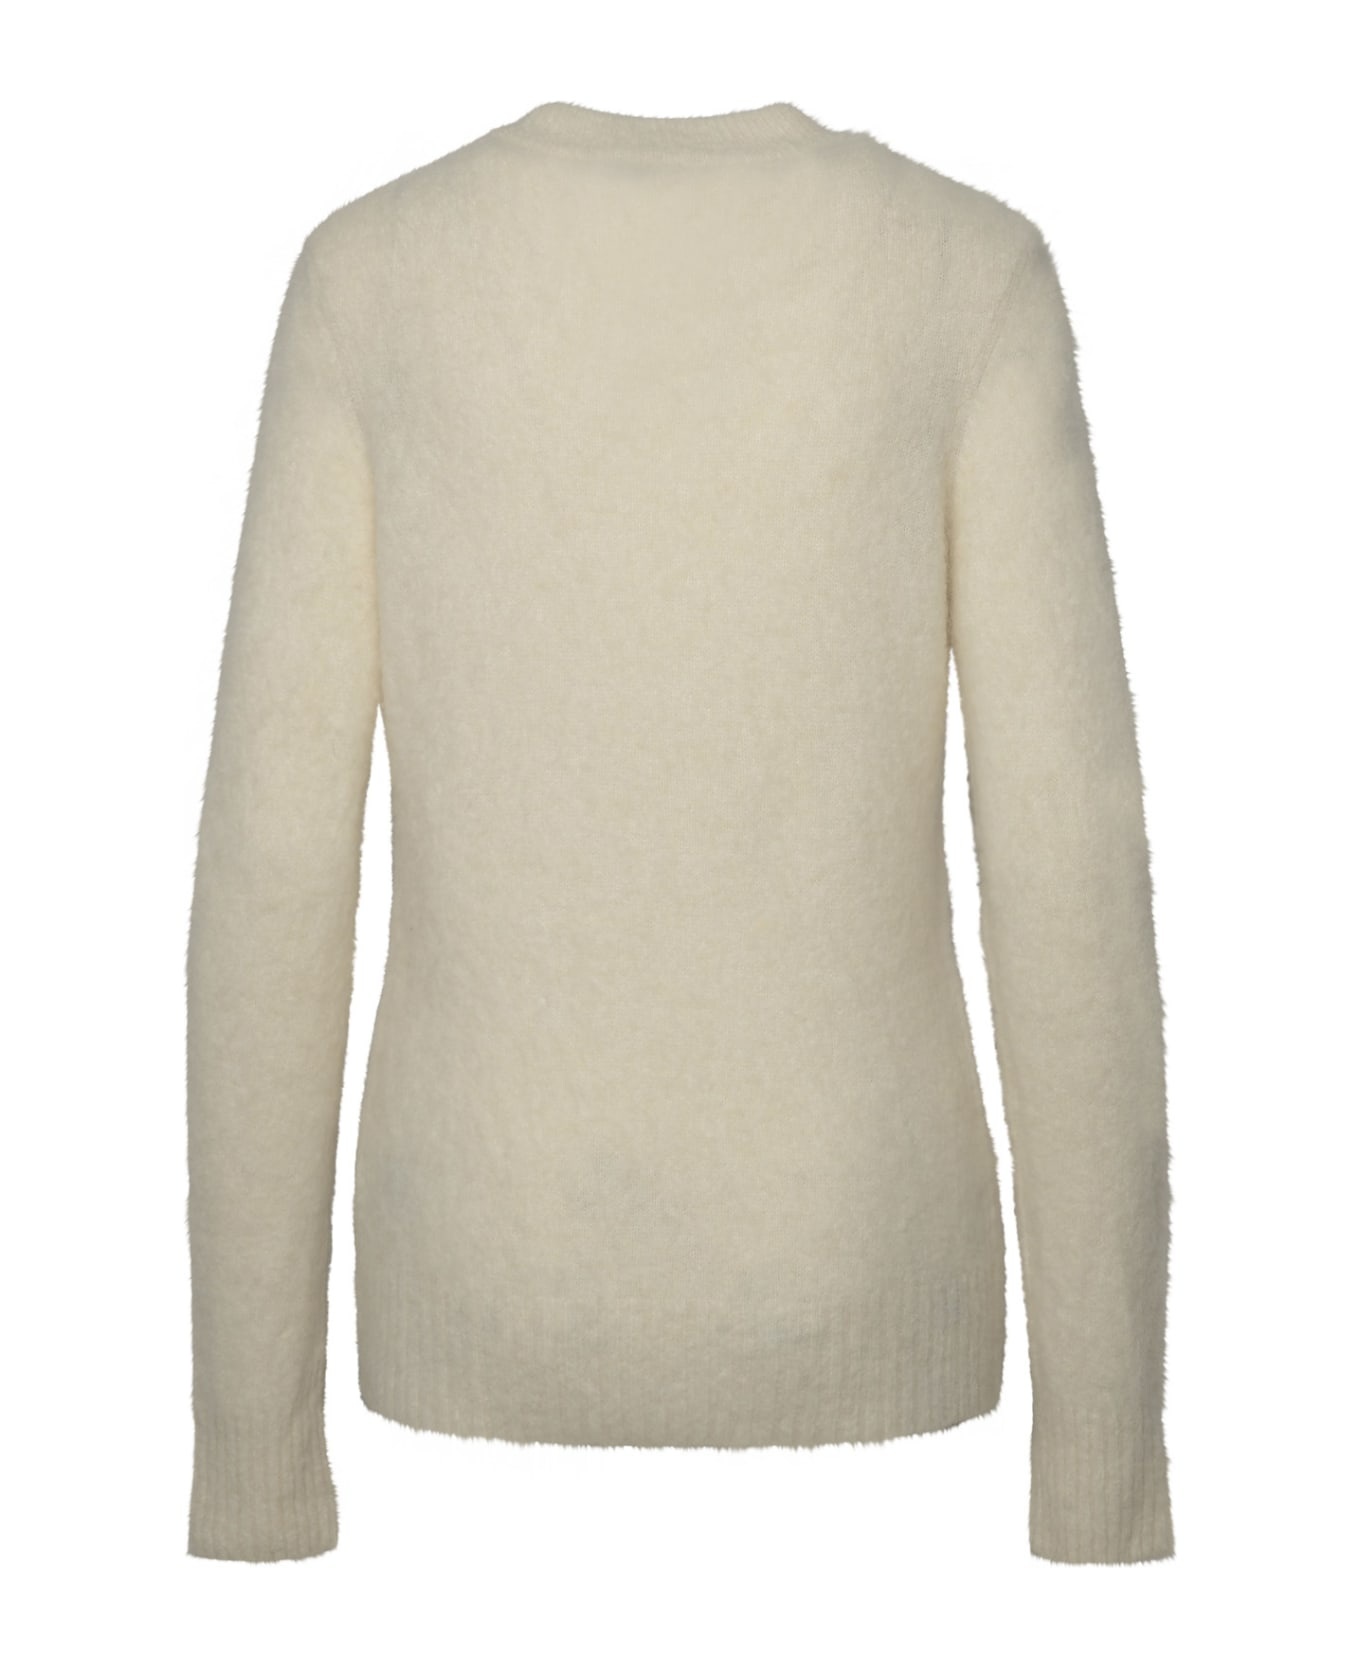 Ivory Brushed Alpaca Sweater - 3